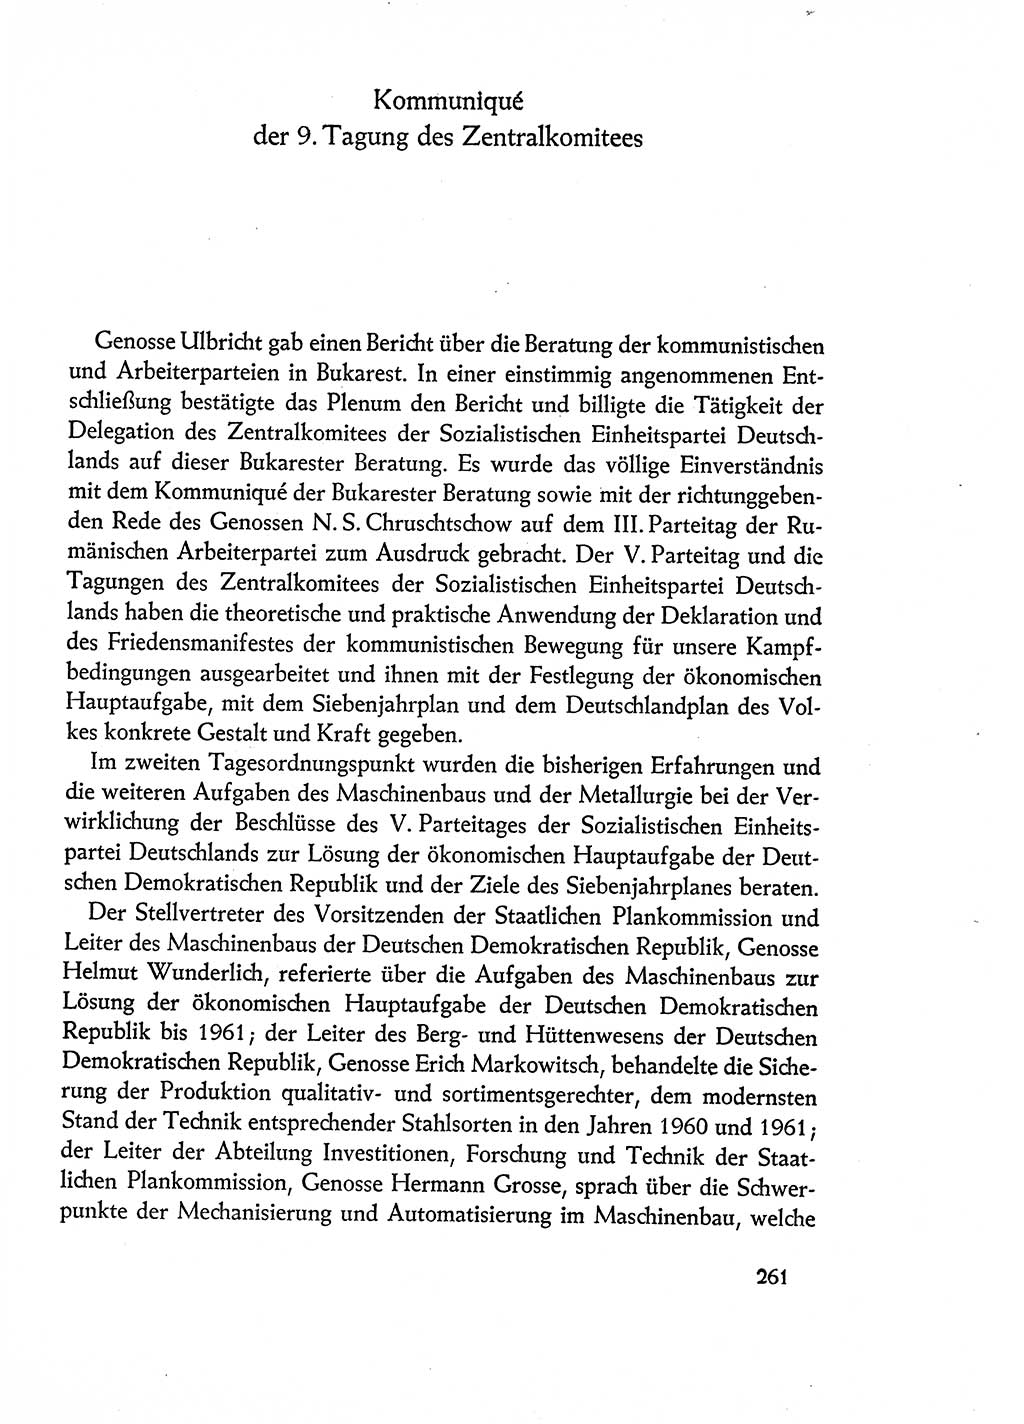 Dokumente der Sozialistischen Einheitspartei Deutschlands (SED) [Deutsche Demokratische Republik (DDR)] 1960-1961, Seite 261 (Dok. SED DDR 1960-1961, S. 261)